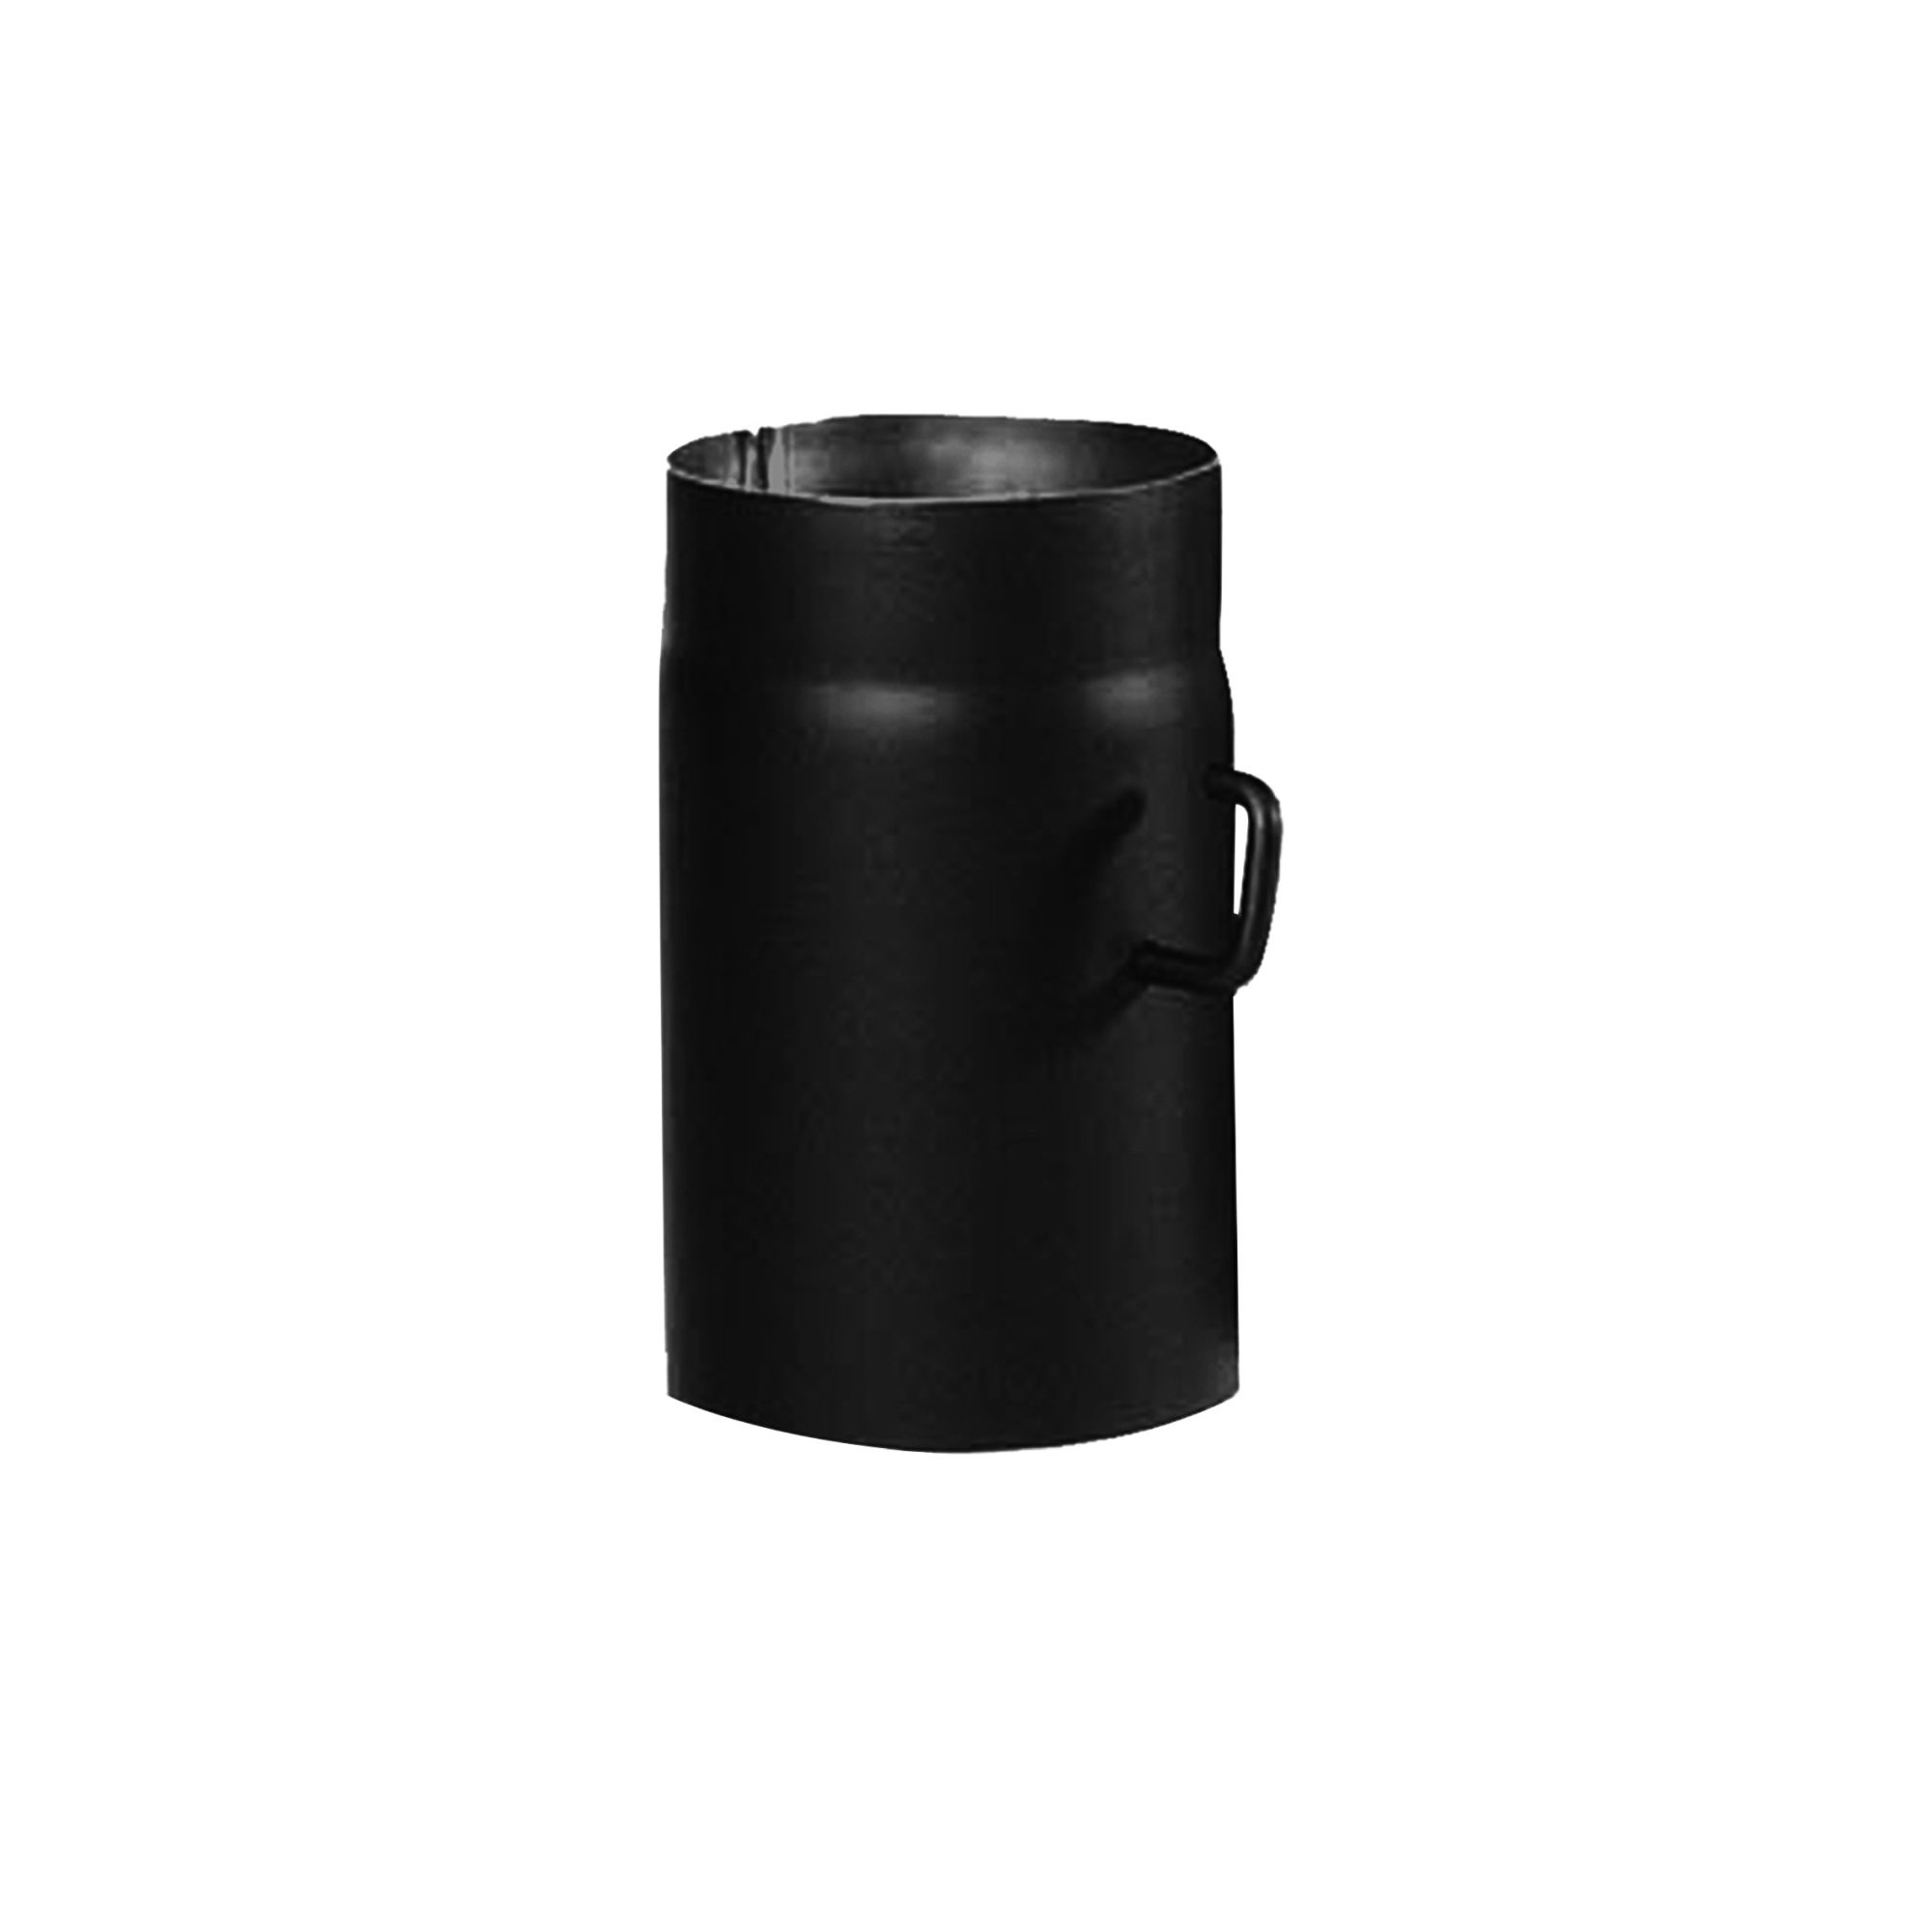 Maße: L 500 x Ø 100 mm Kamino Flam Ofenrohr schwarz Rauchrohr aus Stahl mit hitzebeständiger Senotherm® Beschichtung Abgasrohr speziell für Pelletöfen geeignet geprüft nach Norm EN 1856-2